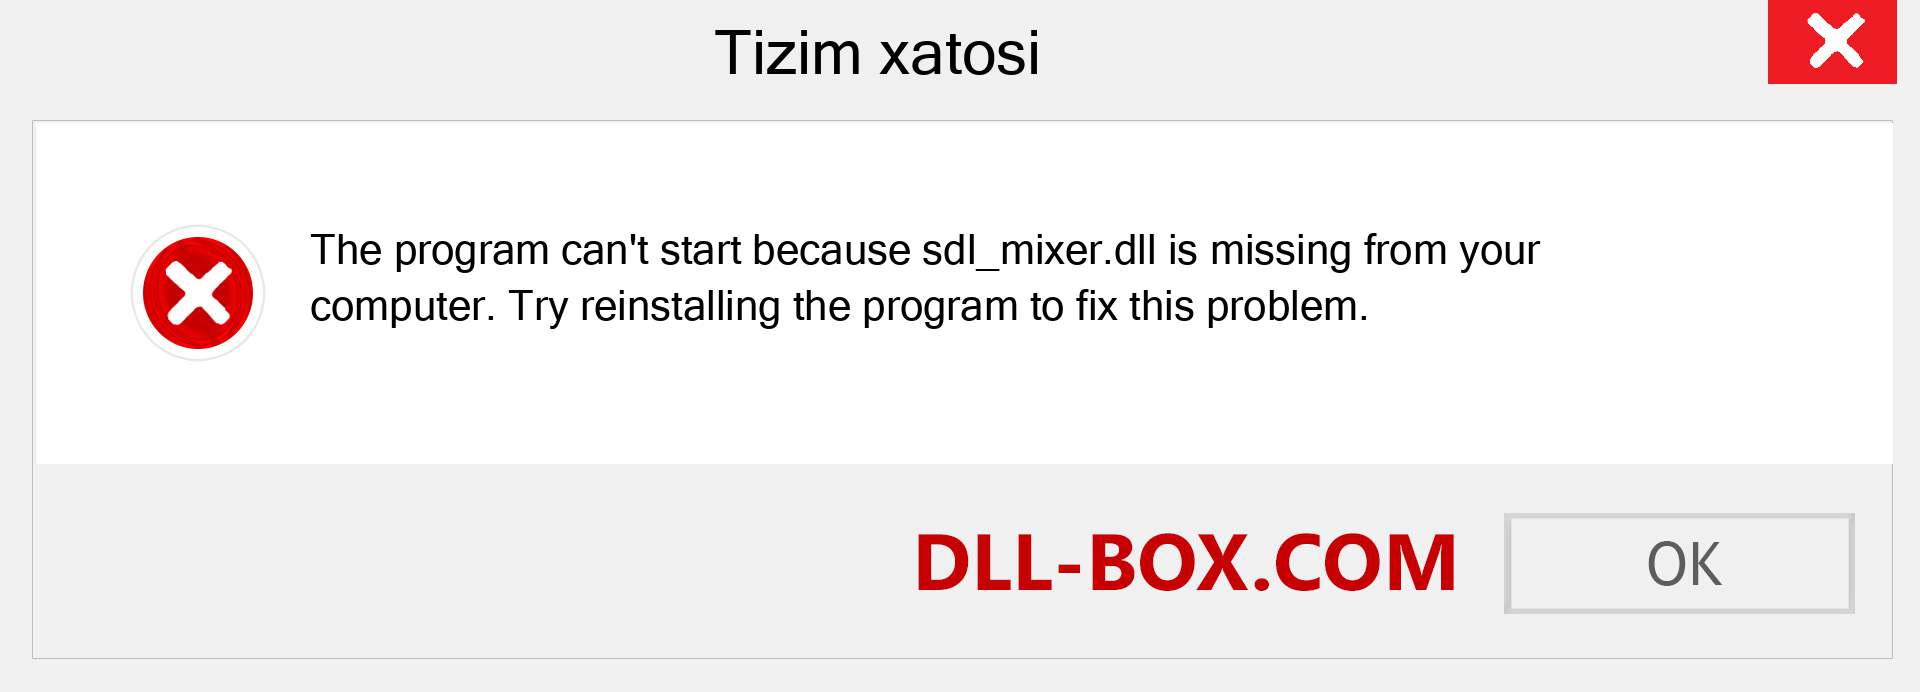 sdl_mixer.dll fayli yo'qolganmi?. Windows 7, 8, 10 uchun yuklab olish - Windowsda sdl_mixer dll etishmayotgan xatoni tuzating, rasmlar, rasmlar